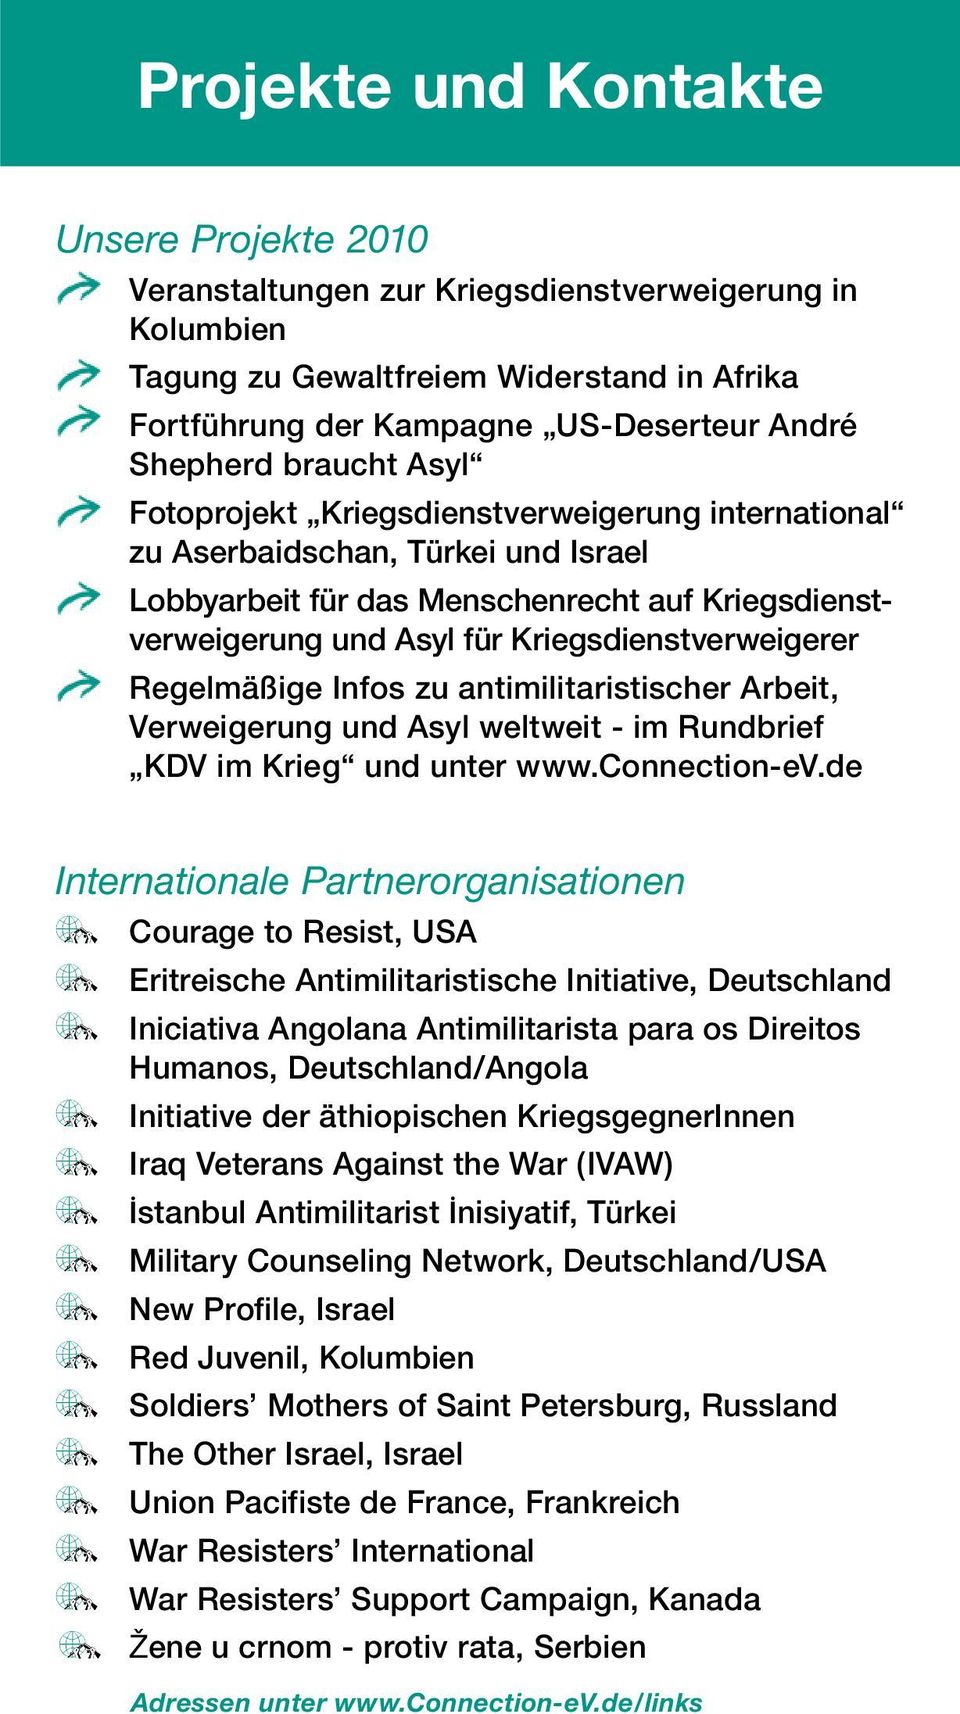 Regelmäßige Infos zu antimilitaristischer Arbeit, Verweigerung und Asyl weltweit - im Rundbrief KDV im Krieg und unter www.connection-ev.